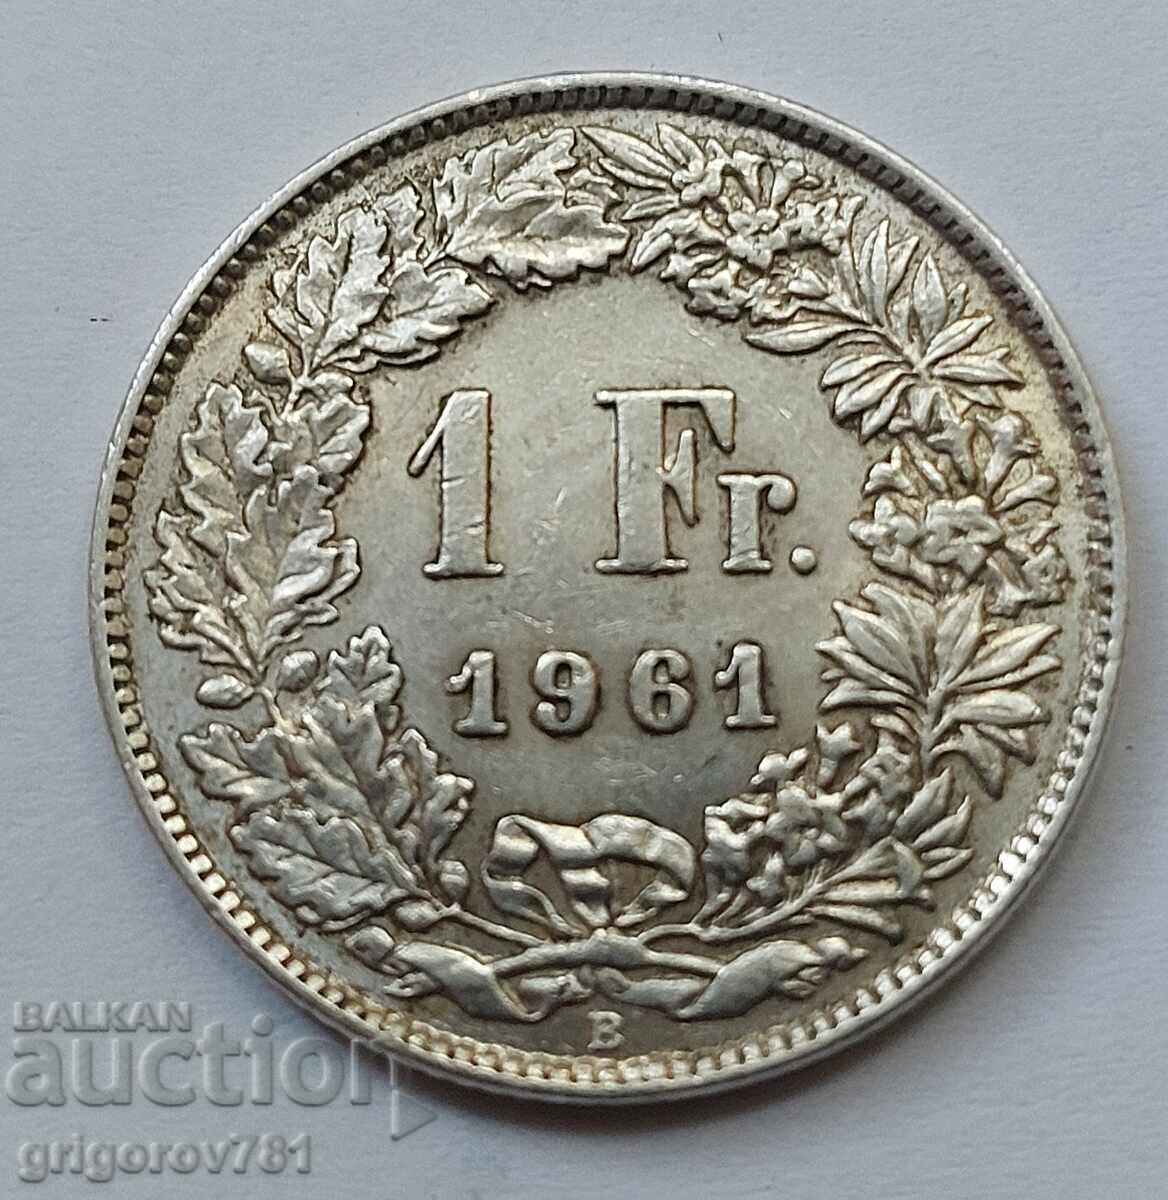 Ασημένιο 1 Φράγκο Ελβετία 1961 B - Ασημένιο νόμισμα #13